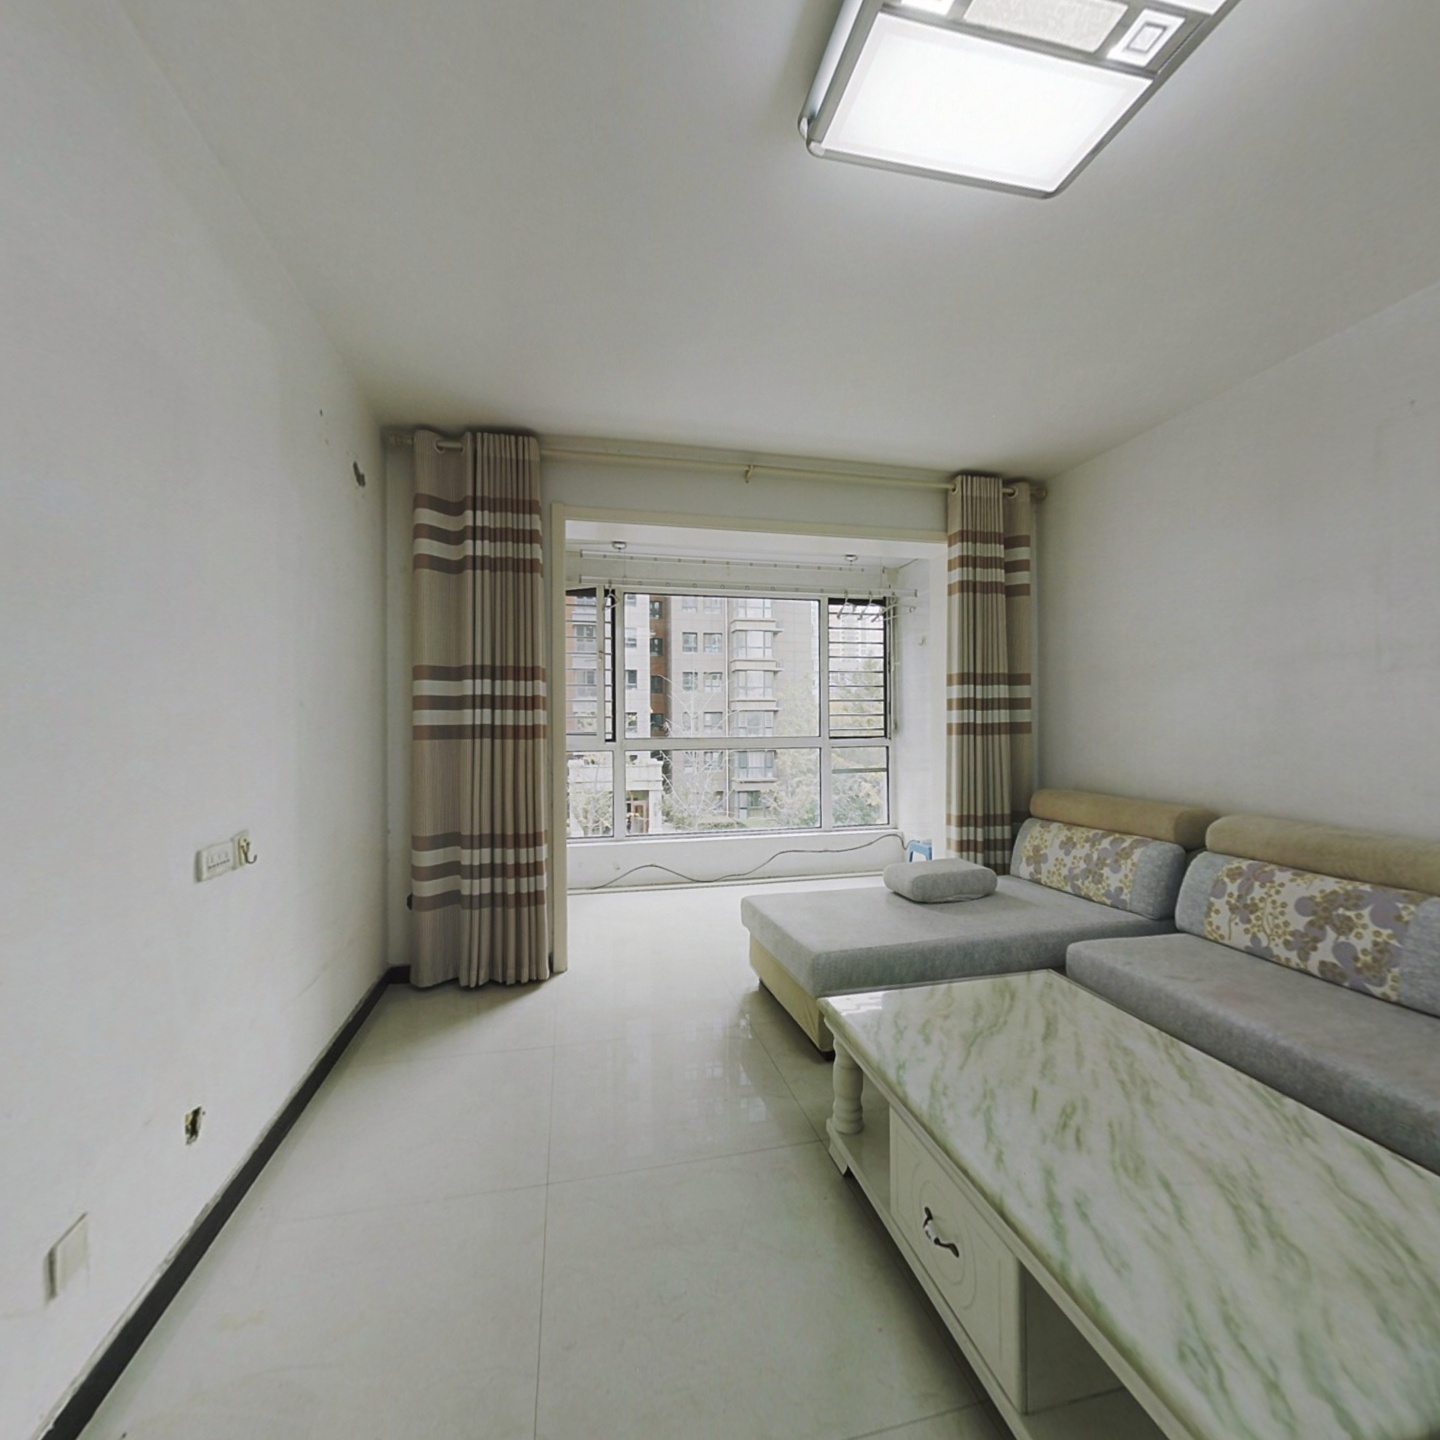 安居东城精装两室两厅一卫老证可贷款全明户型低楼层。